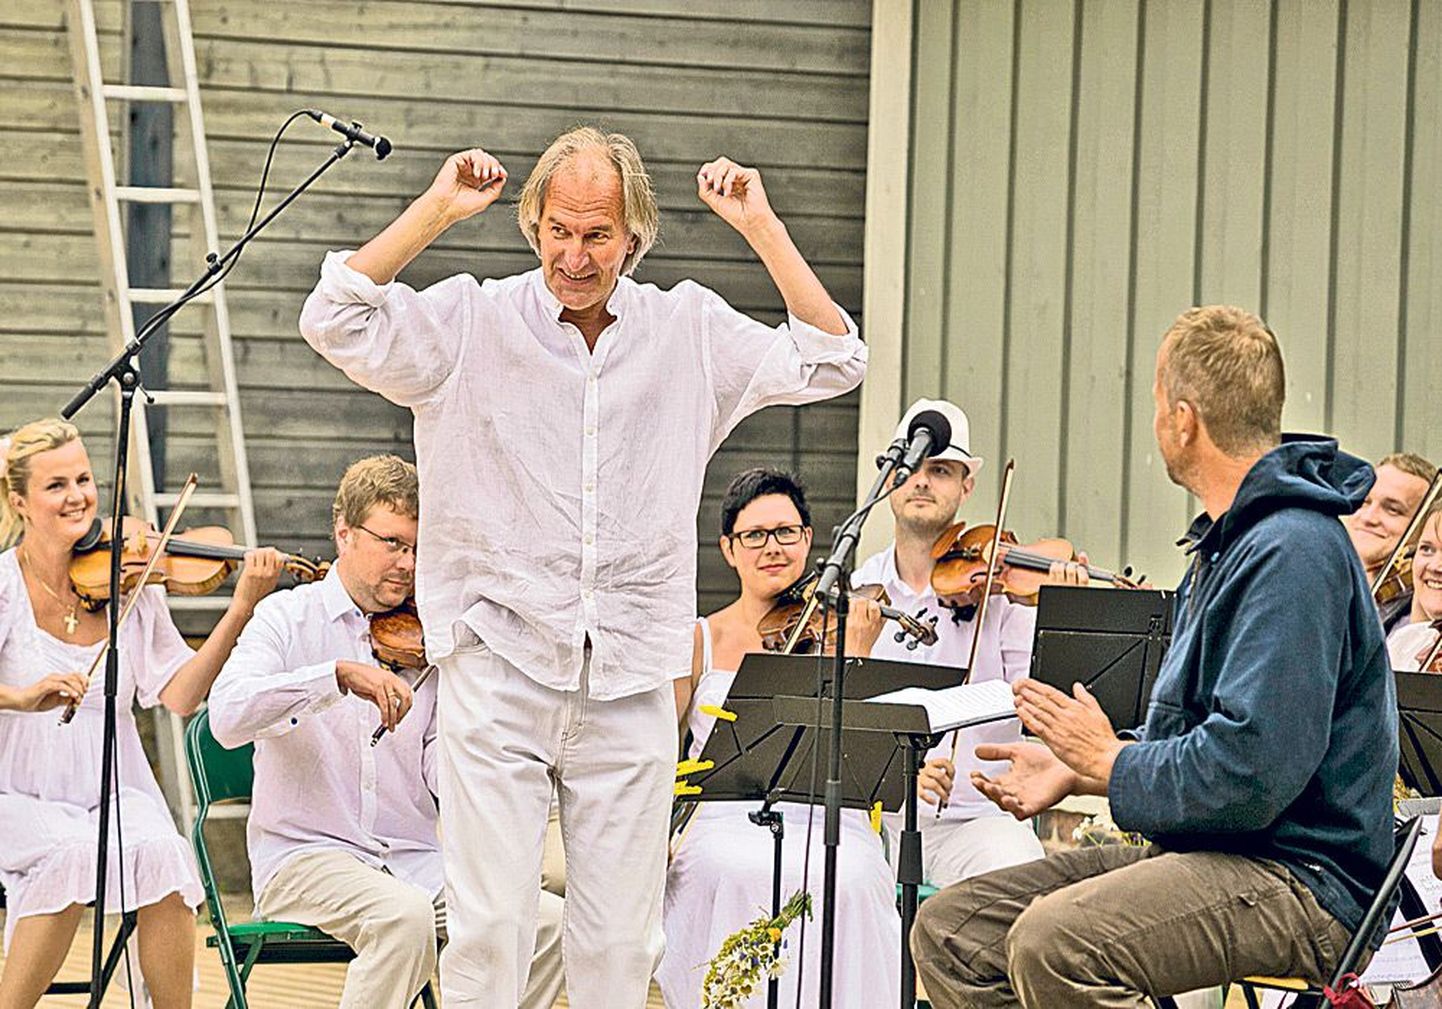 Meretagused mehed: Hellerella aia avamisel 2013 suvel sai Tõnu Kaljuste kokku Jaan Tättega, kes esines seal esimest korda elus kammer-
orkestriga.